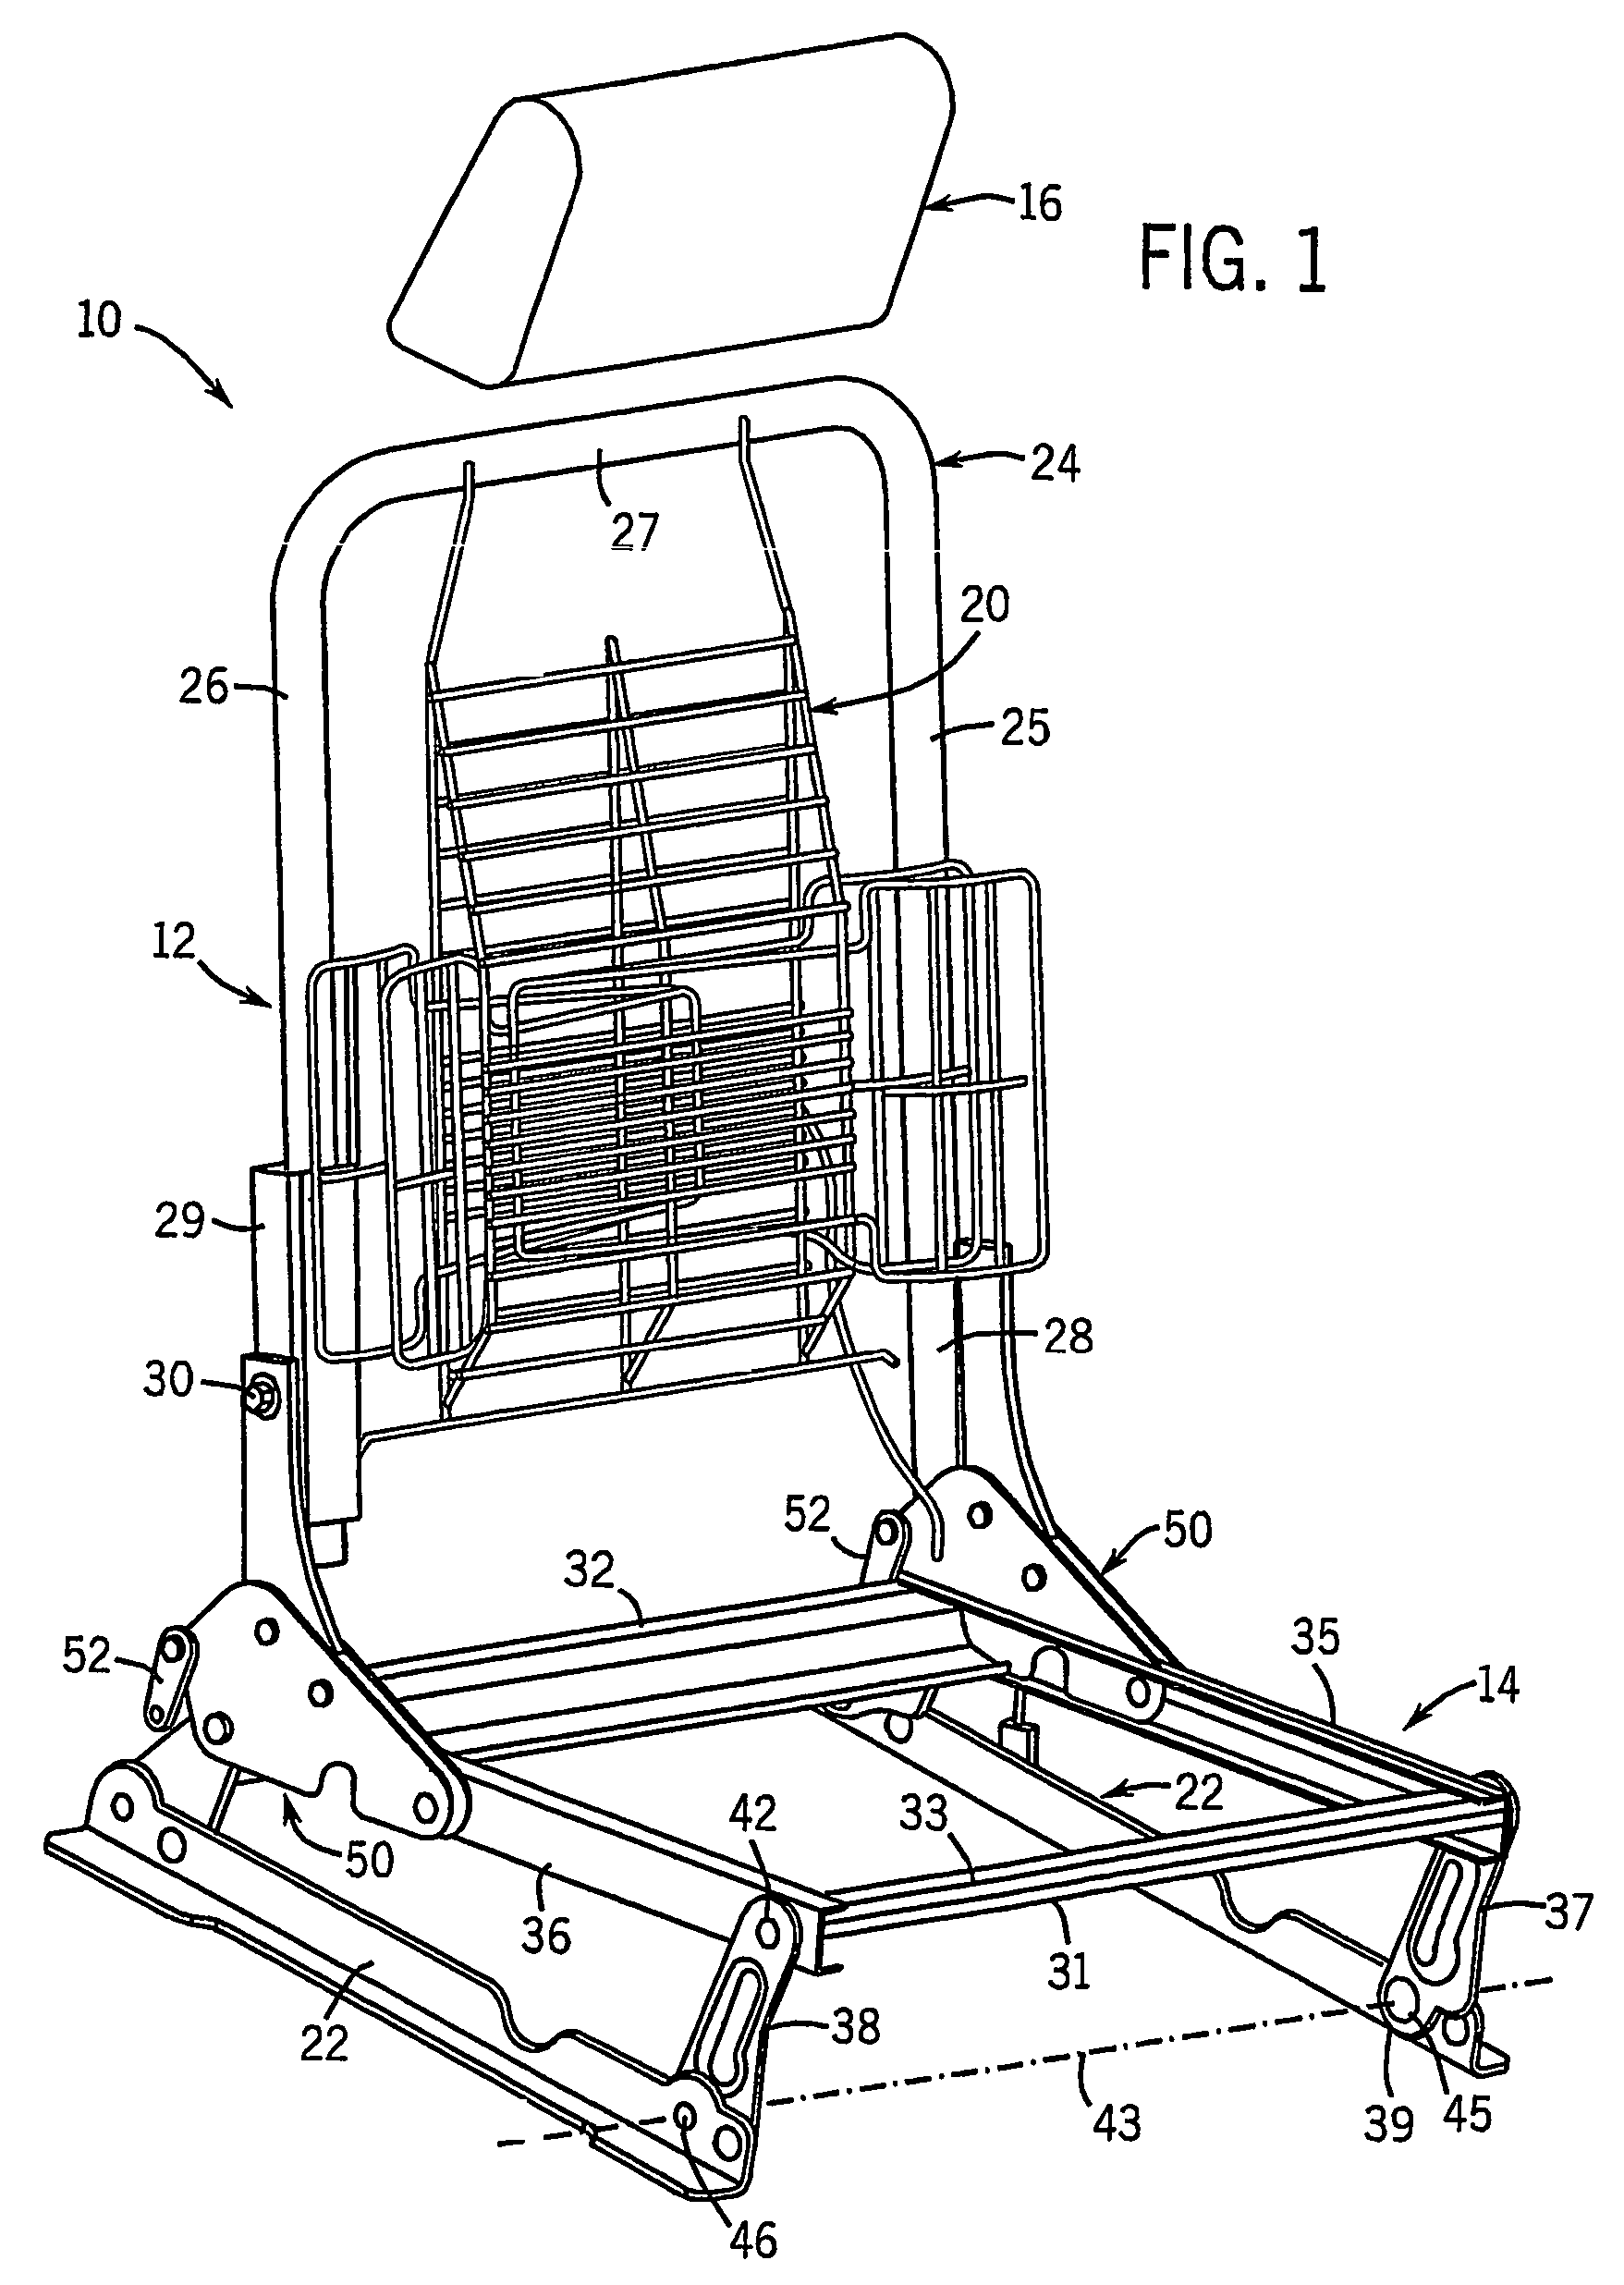 Thin profile folding vehicle seat